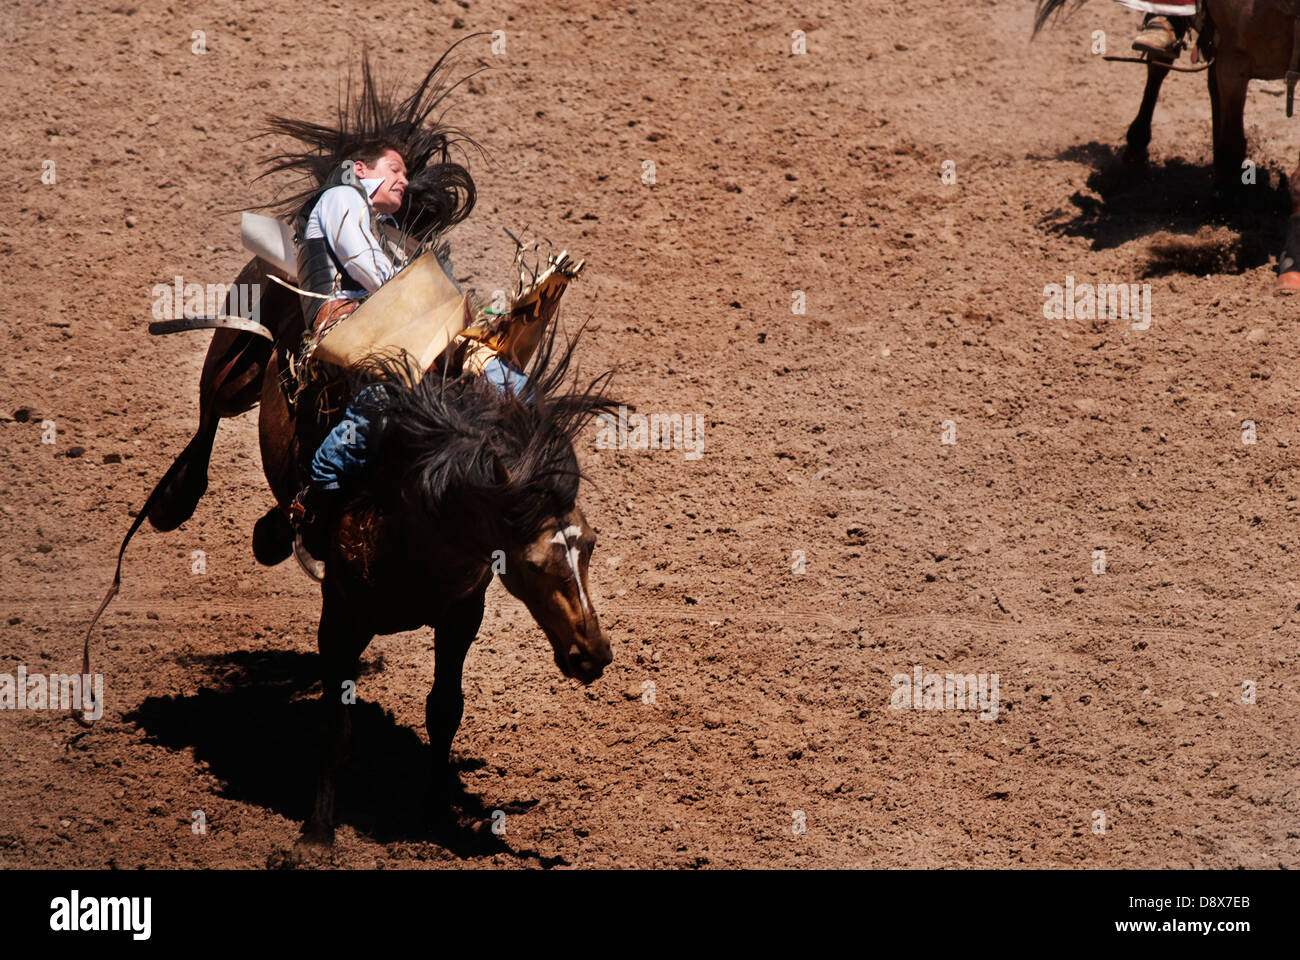 Cowboys montando caballos bronco en una competencia de rodeo Foto de stock